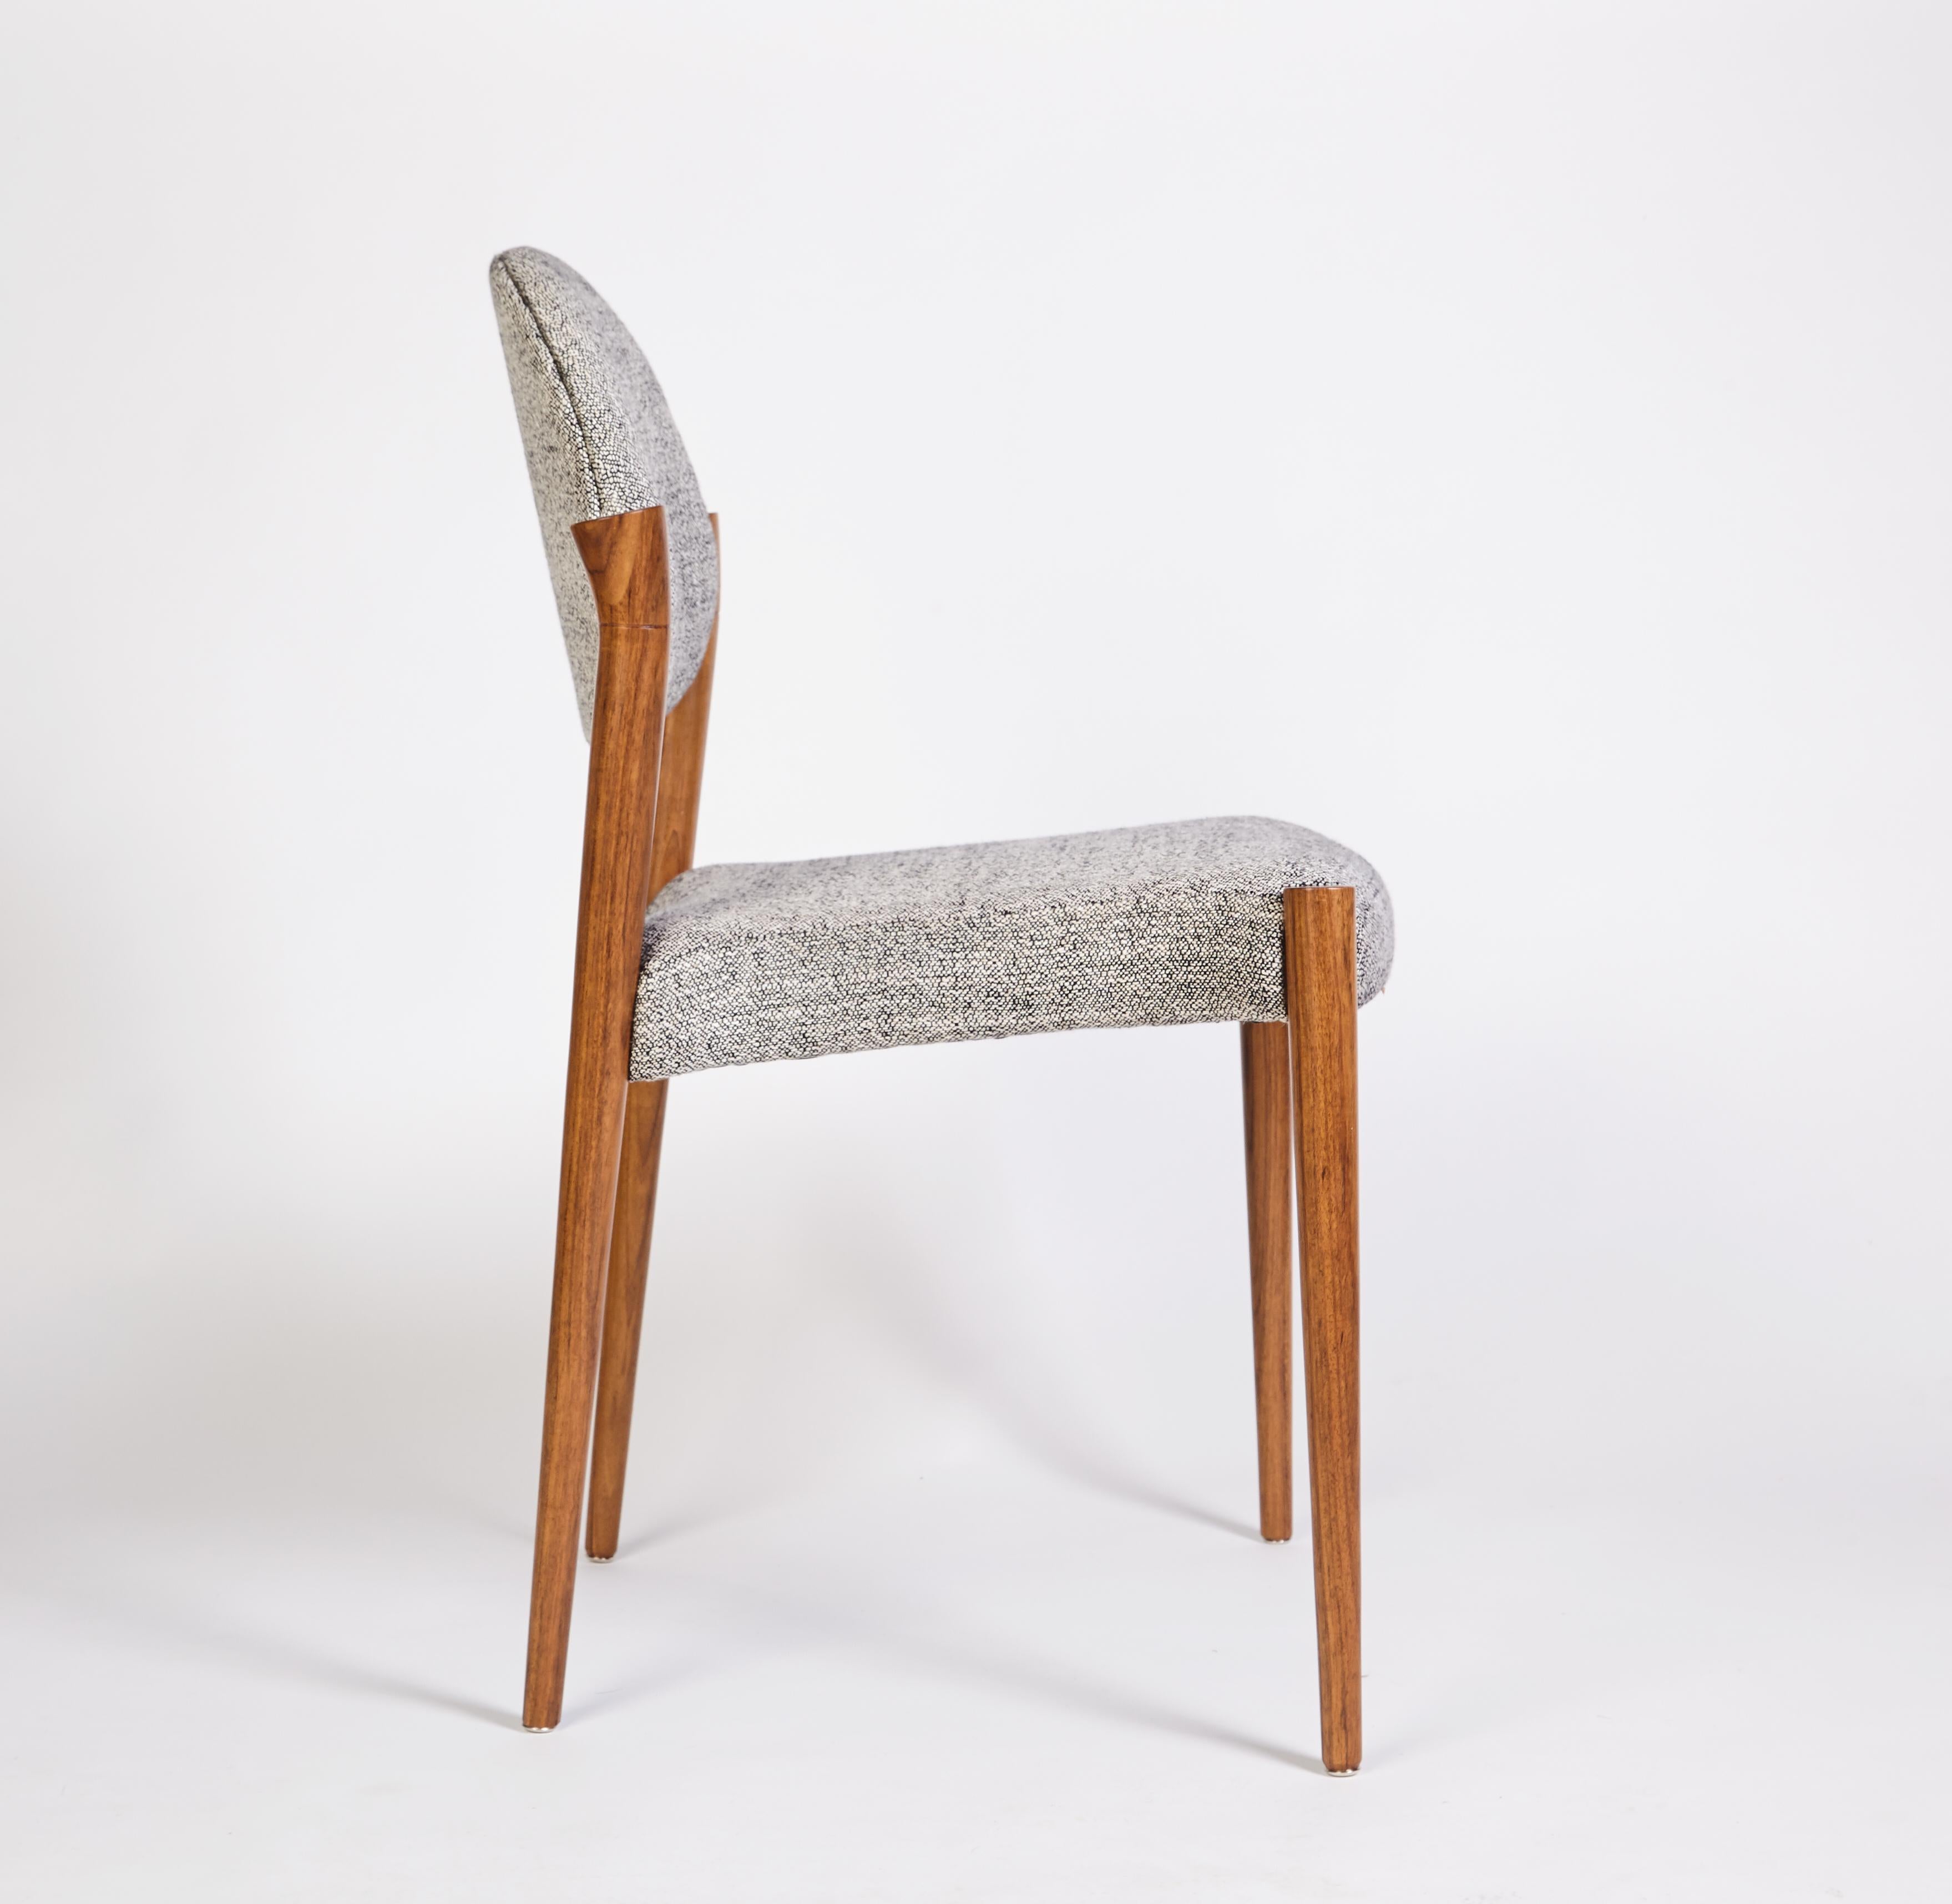 Petite chaise Tanoco, en bois de Mutenye satiné, fabriquée à la main au Portugal par Duistt

Les chaises Tanoco s'inspirent de l'architecture et de la décoration d'intérieur du milieu du siècle dernier. Avec ses longues arches, il crée simultanément